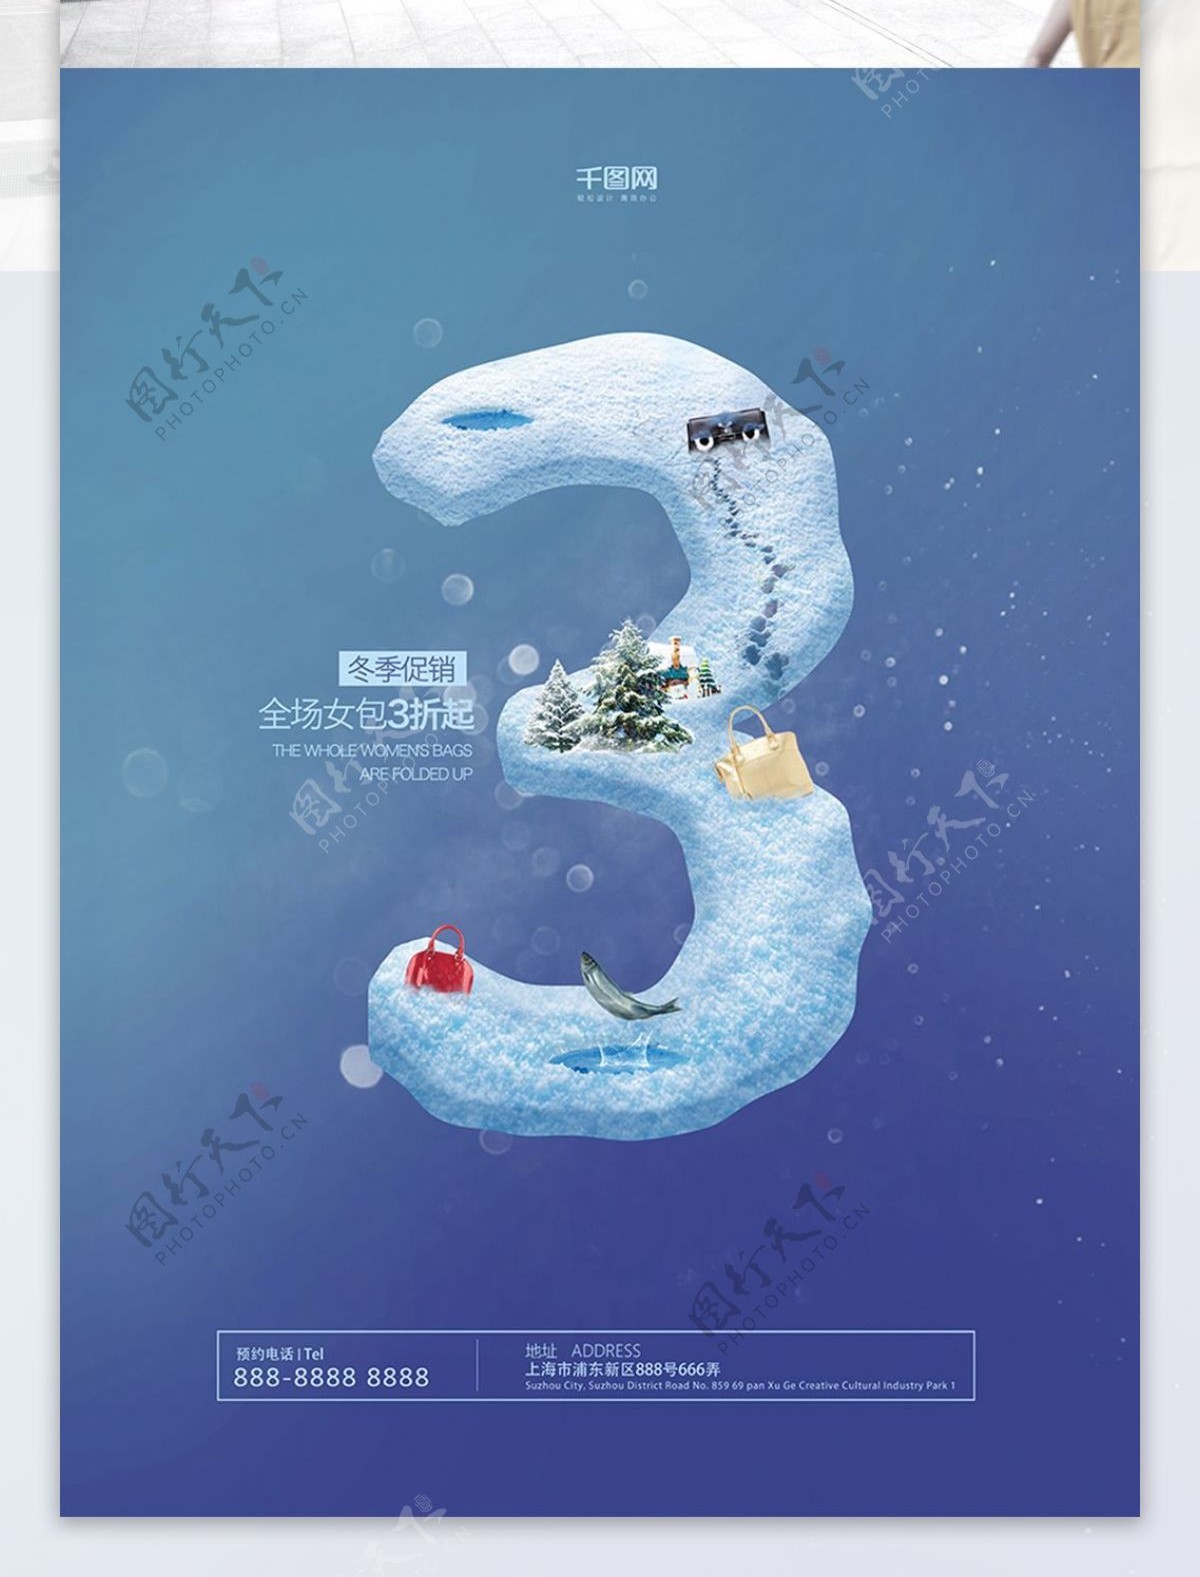 蓝色创意简约雪数字冬季促销海报